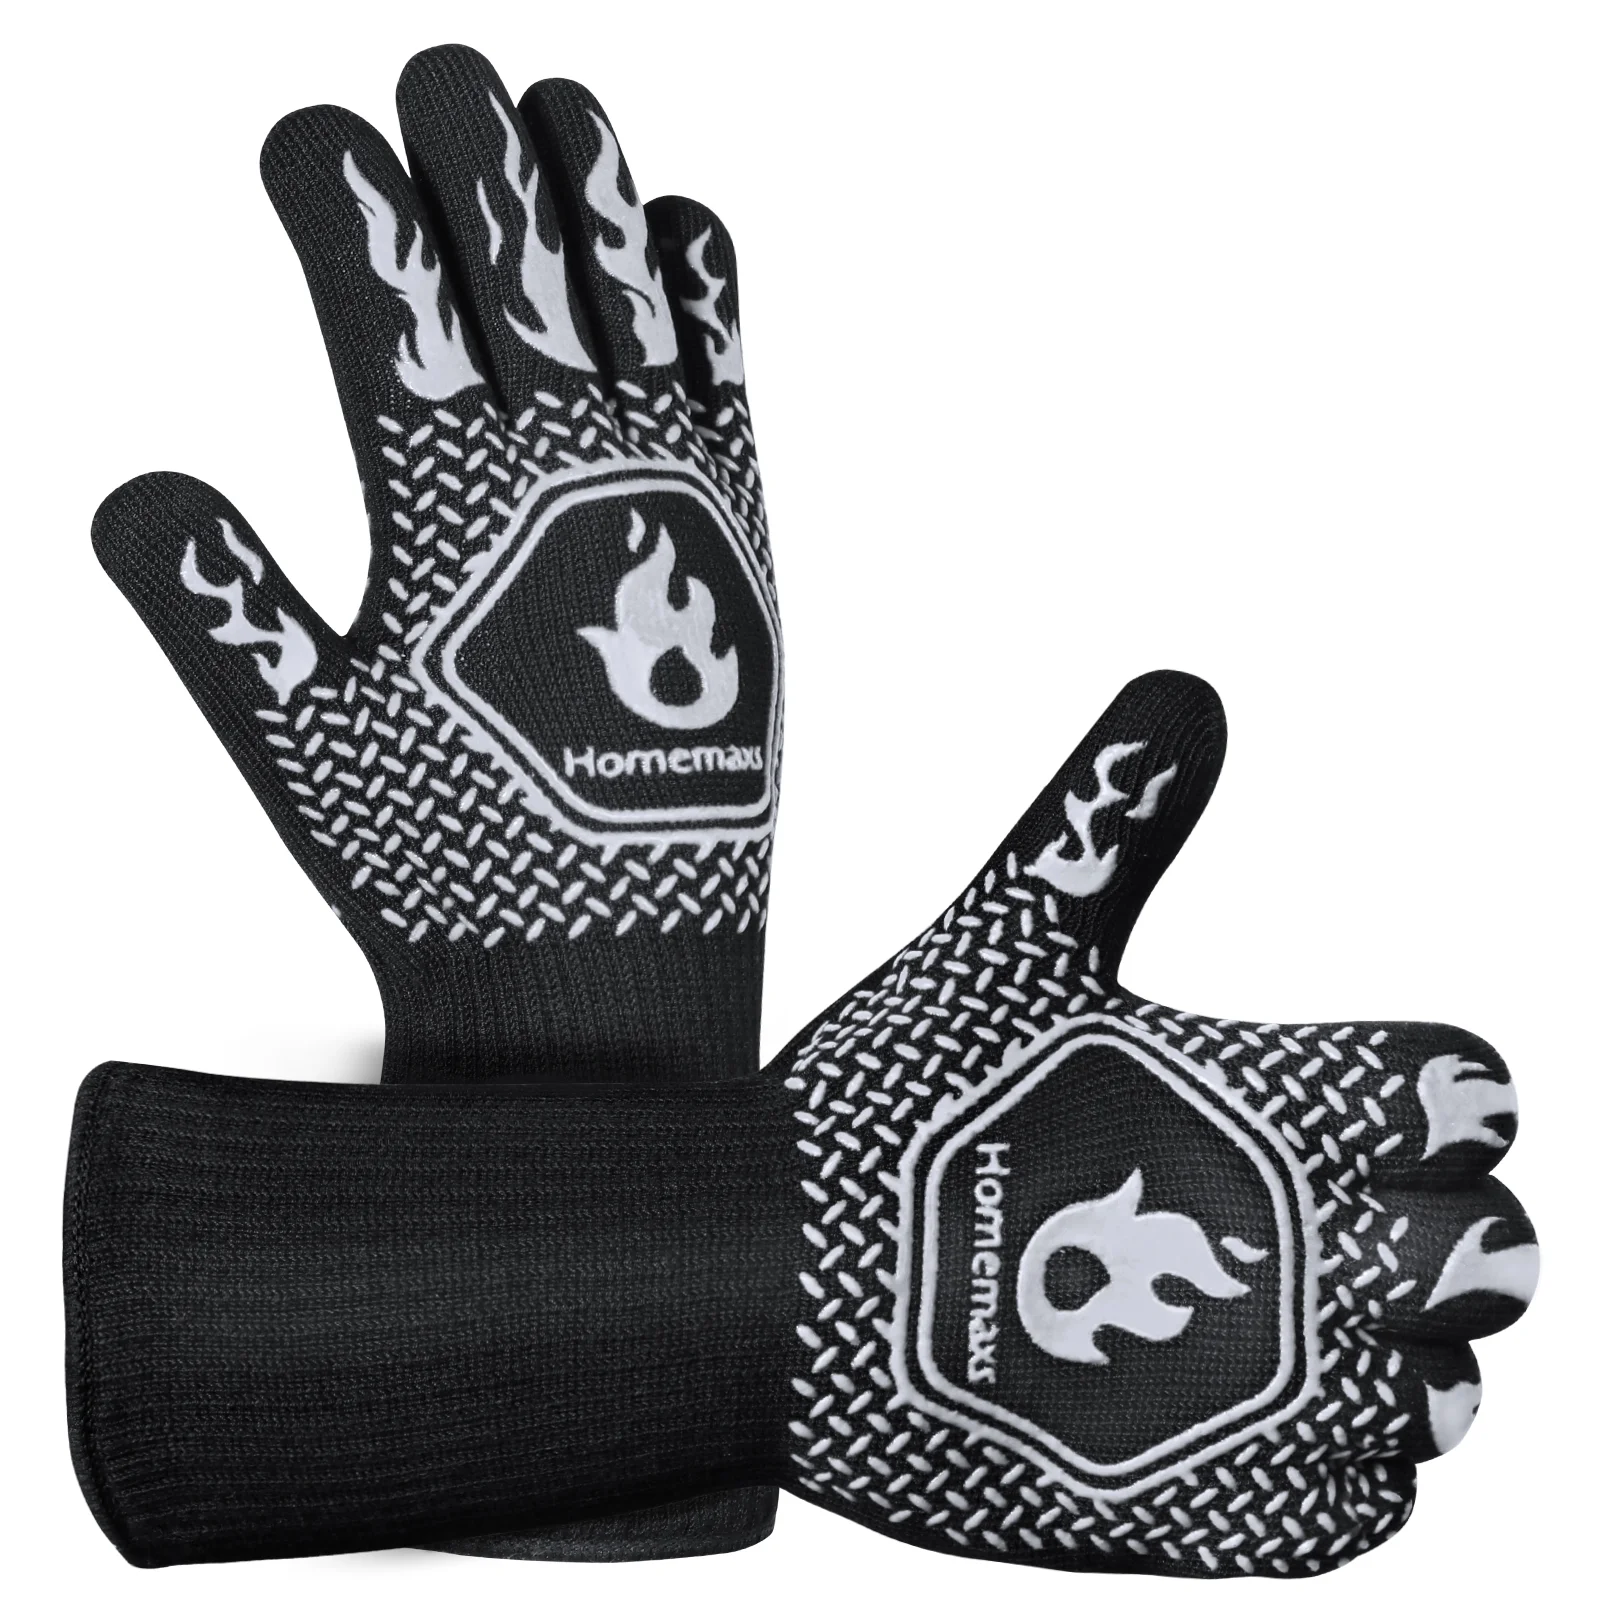 

Перчатки для барбекю HOMEMAXS, 800 ℃/1472 ℉, термостойкие перчатки для гриля, силиконовые перчатки, изолированные перчатки для барбекю с защитой от ожогов